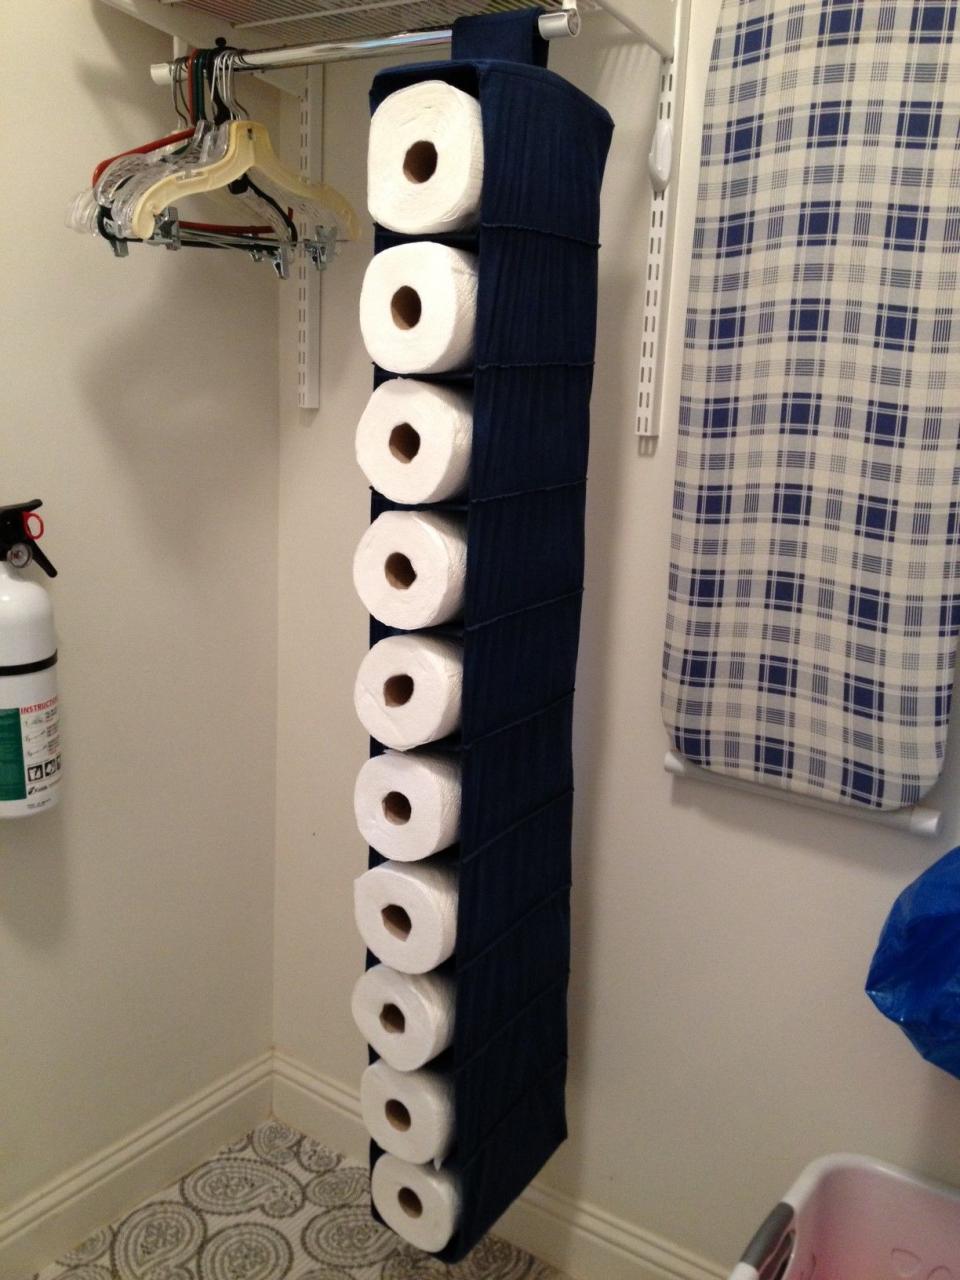 Paper towel storage. Paper towel storage, Towel storage, Rustic